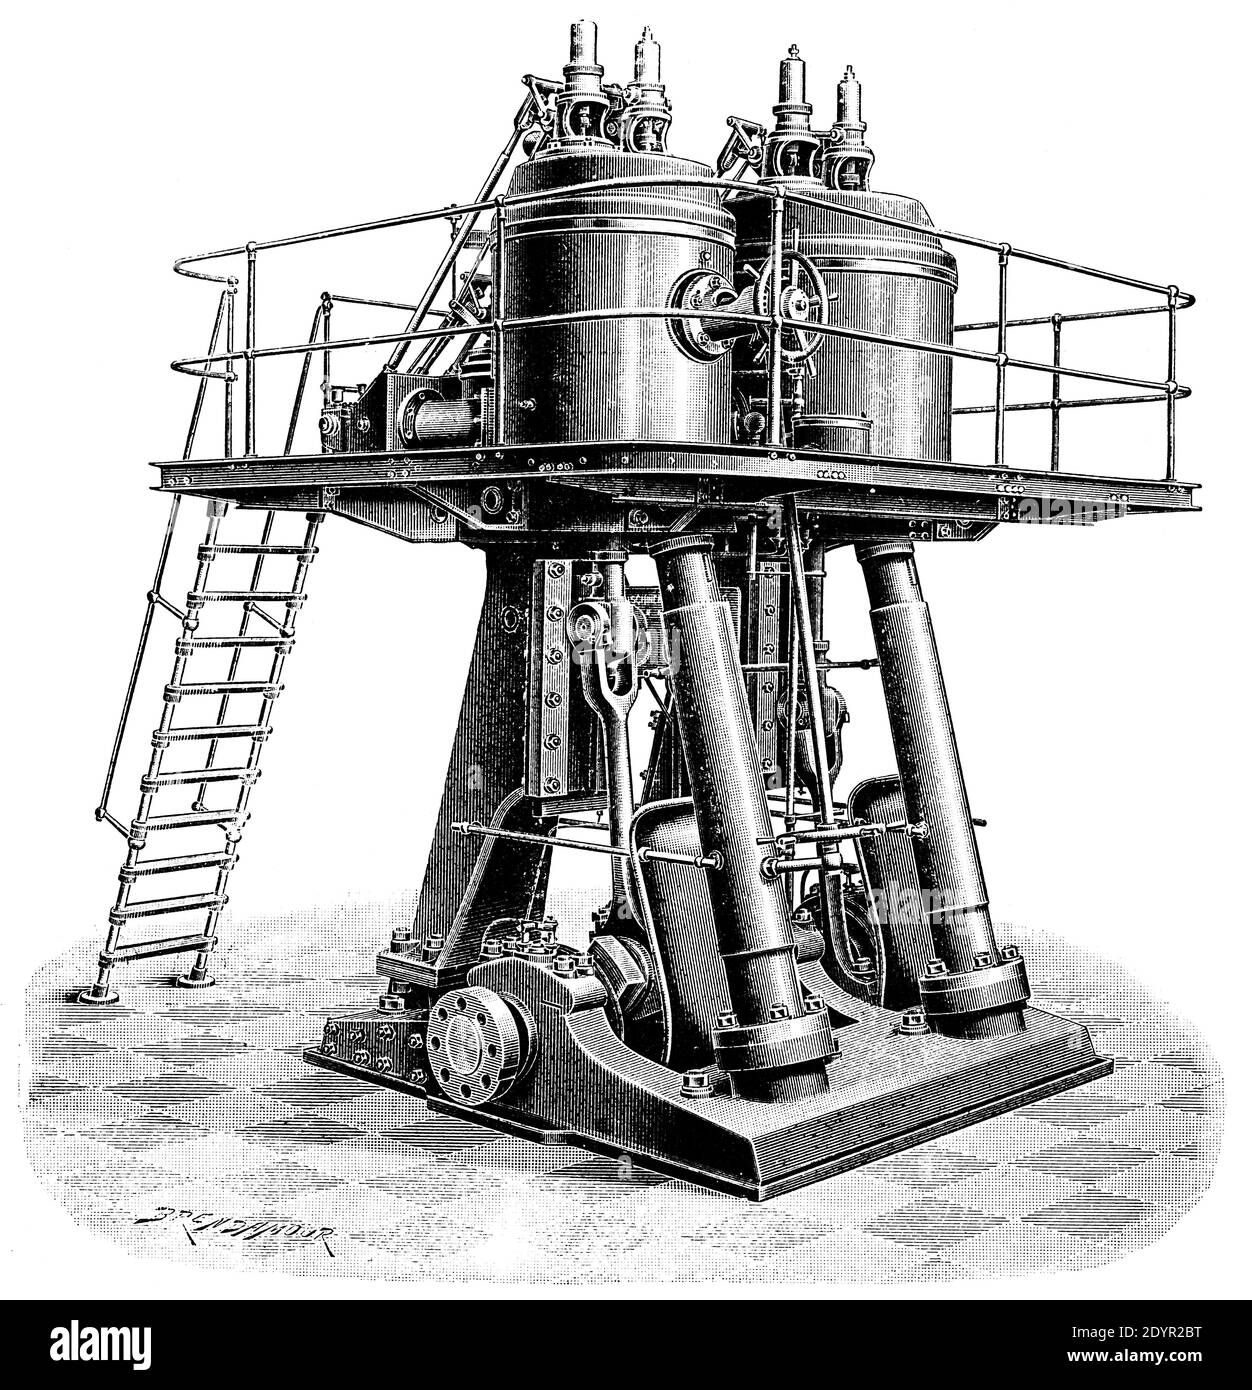 Doppio motore a vapore industriale verticale. Illustrazione del 19 ° secolo. Germania. Sfondo bianco. Foto Stock